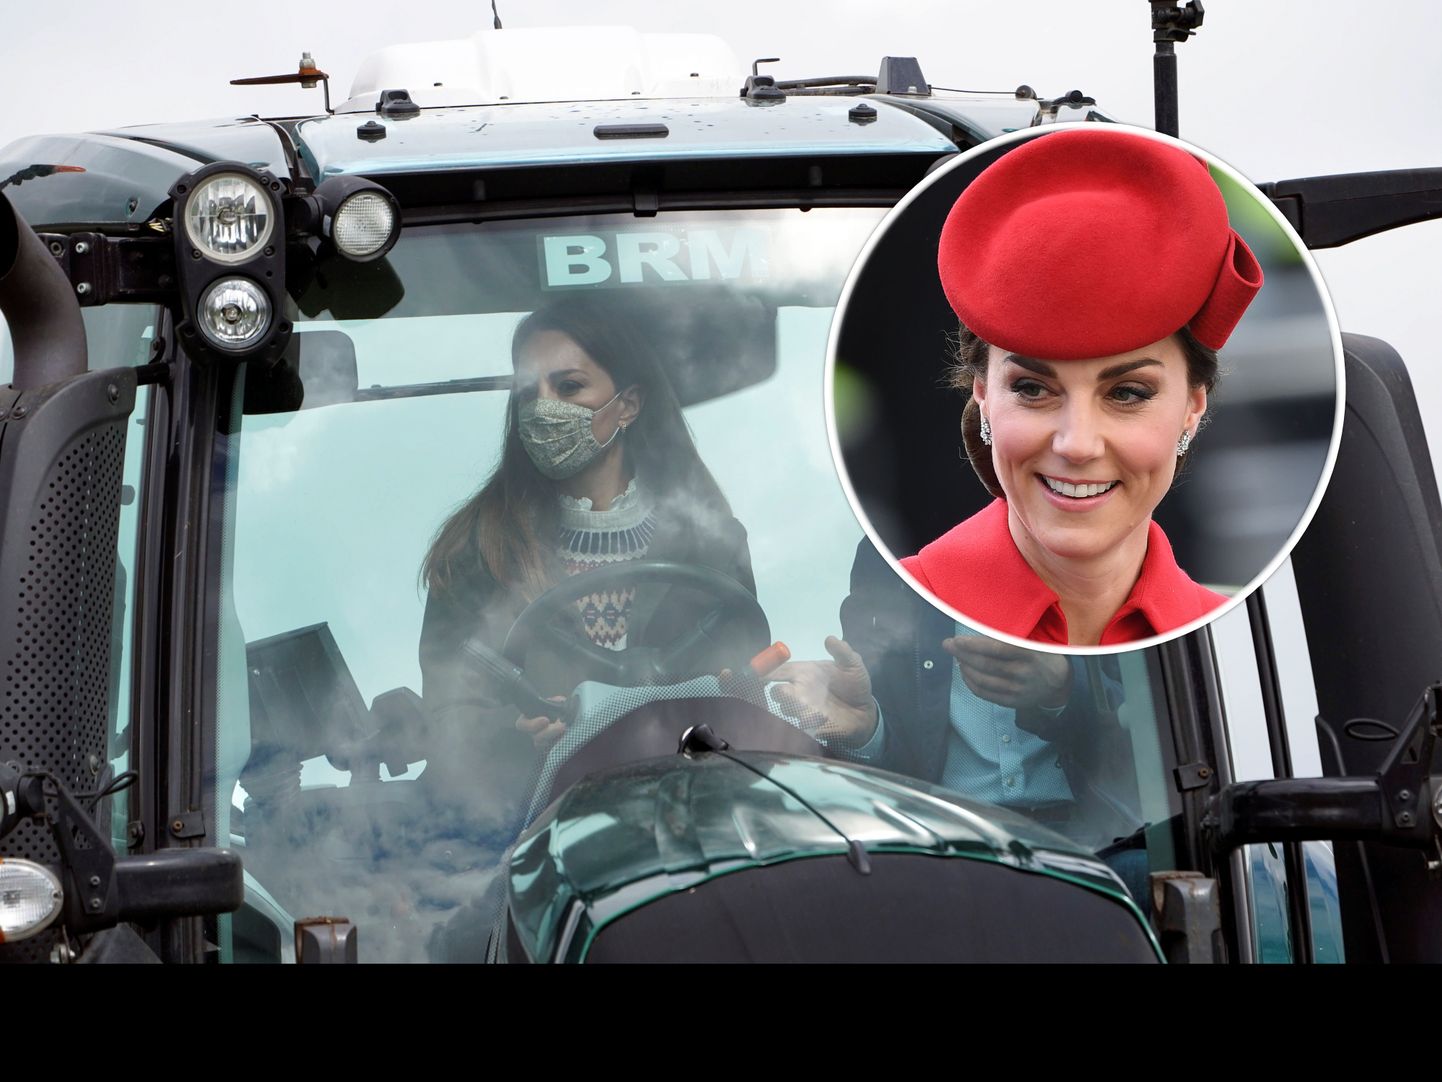 Elu24 kollaaž/hertsoginna Kate Middleton.